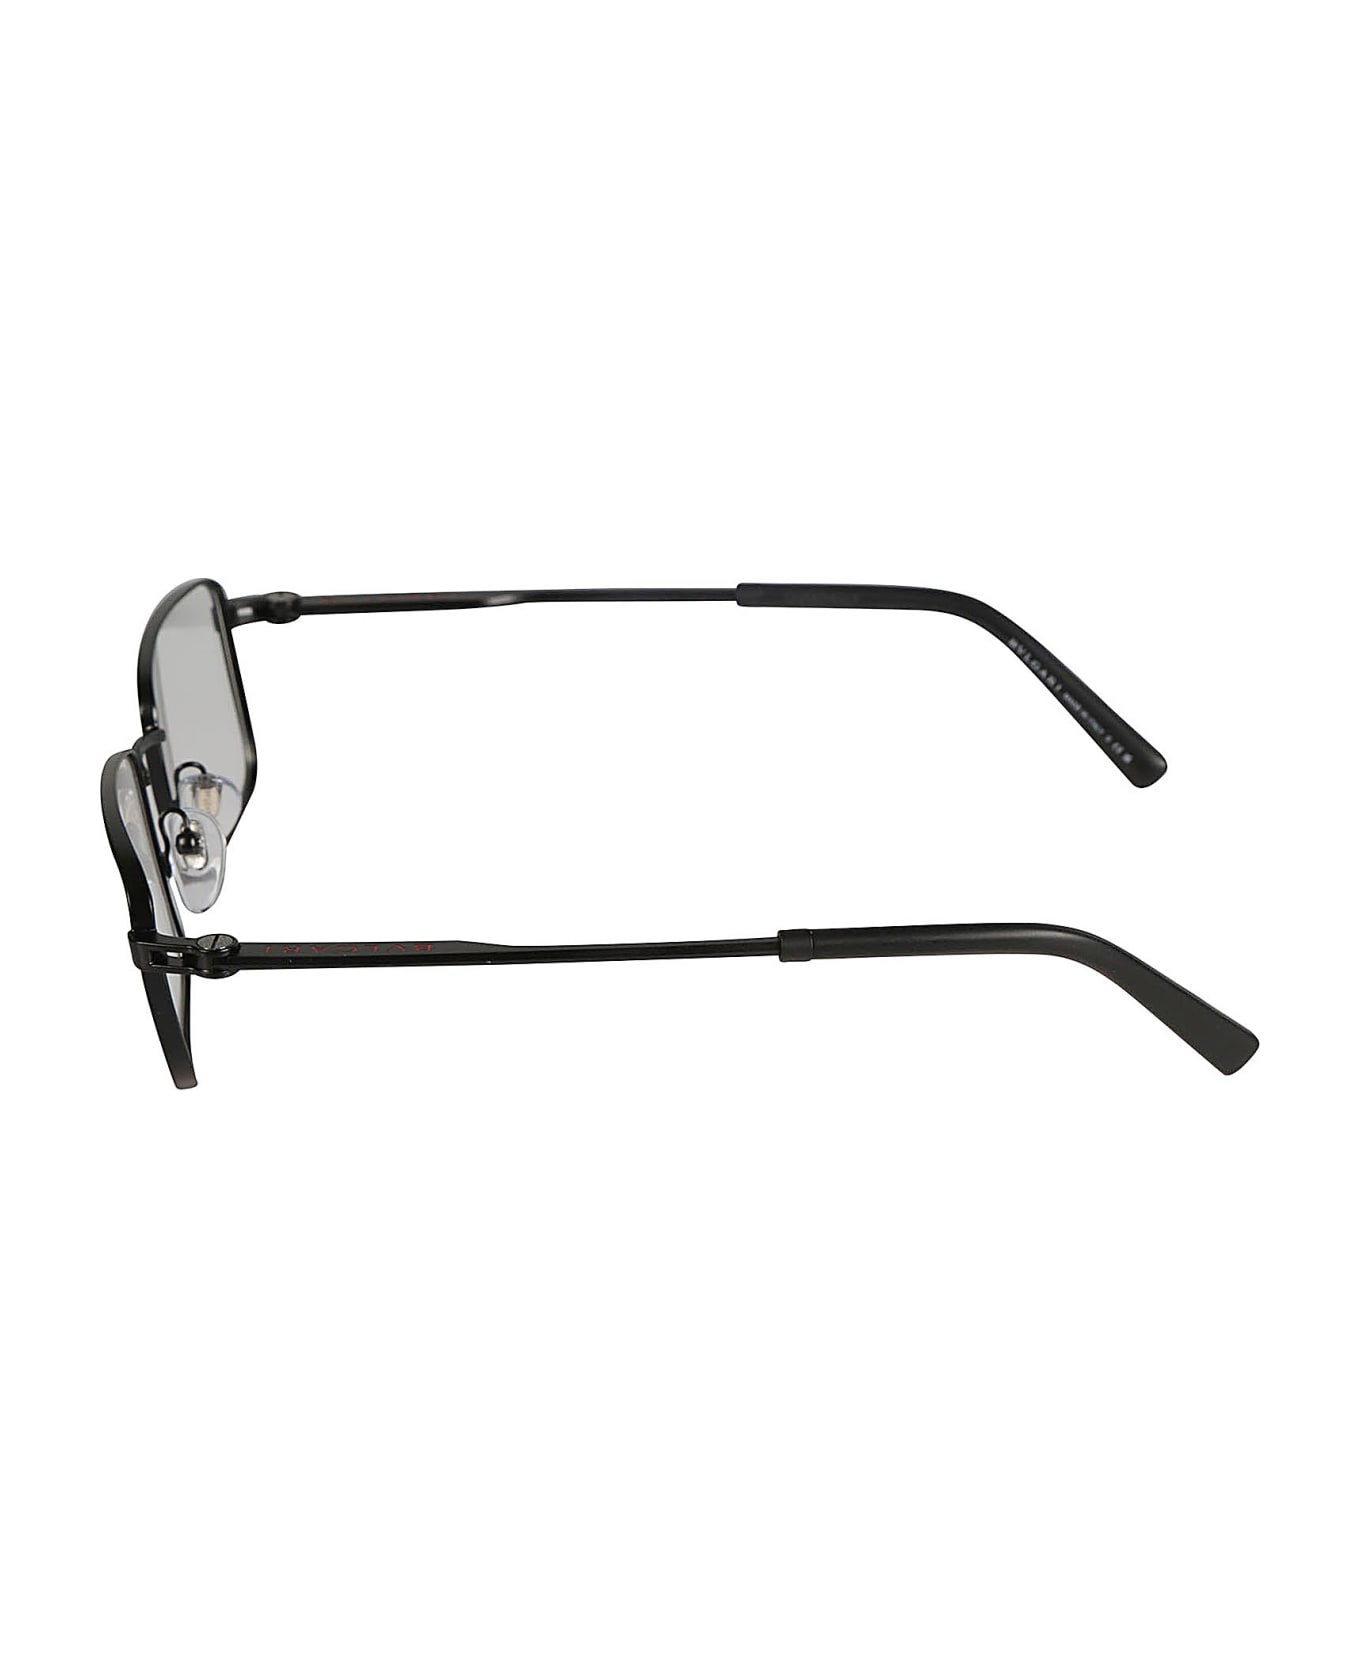 Bulgari Classic Rectangular Rim Glasses - 128